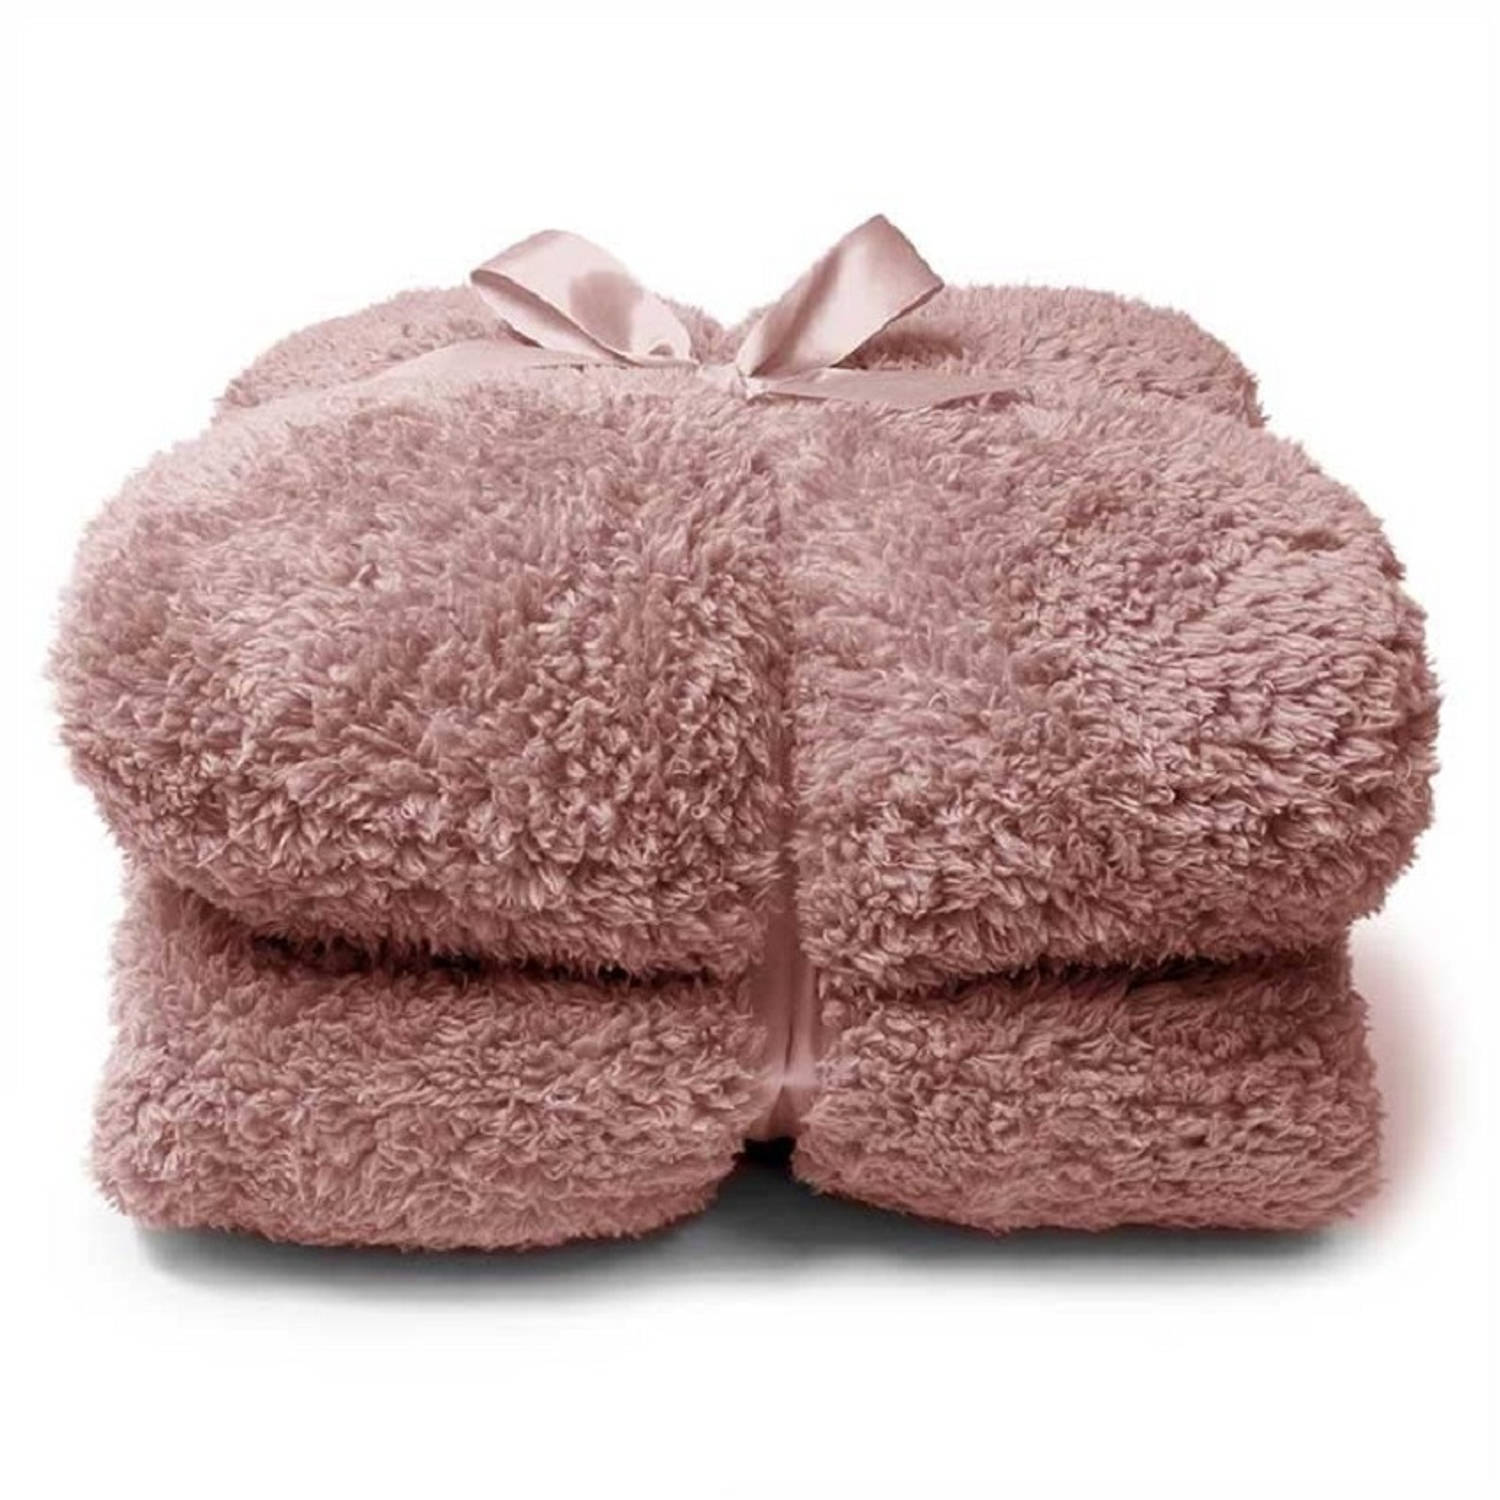 Pluche plaid-deken Teddy oud roze 150 x 200 cm